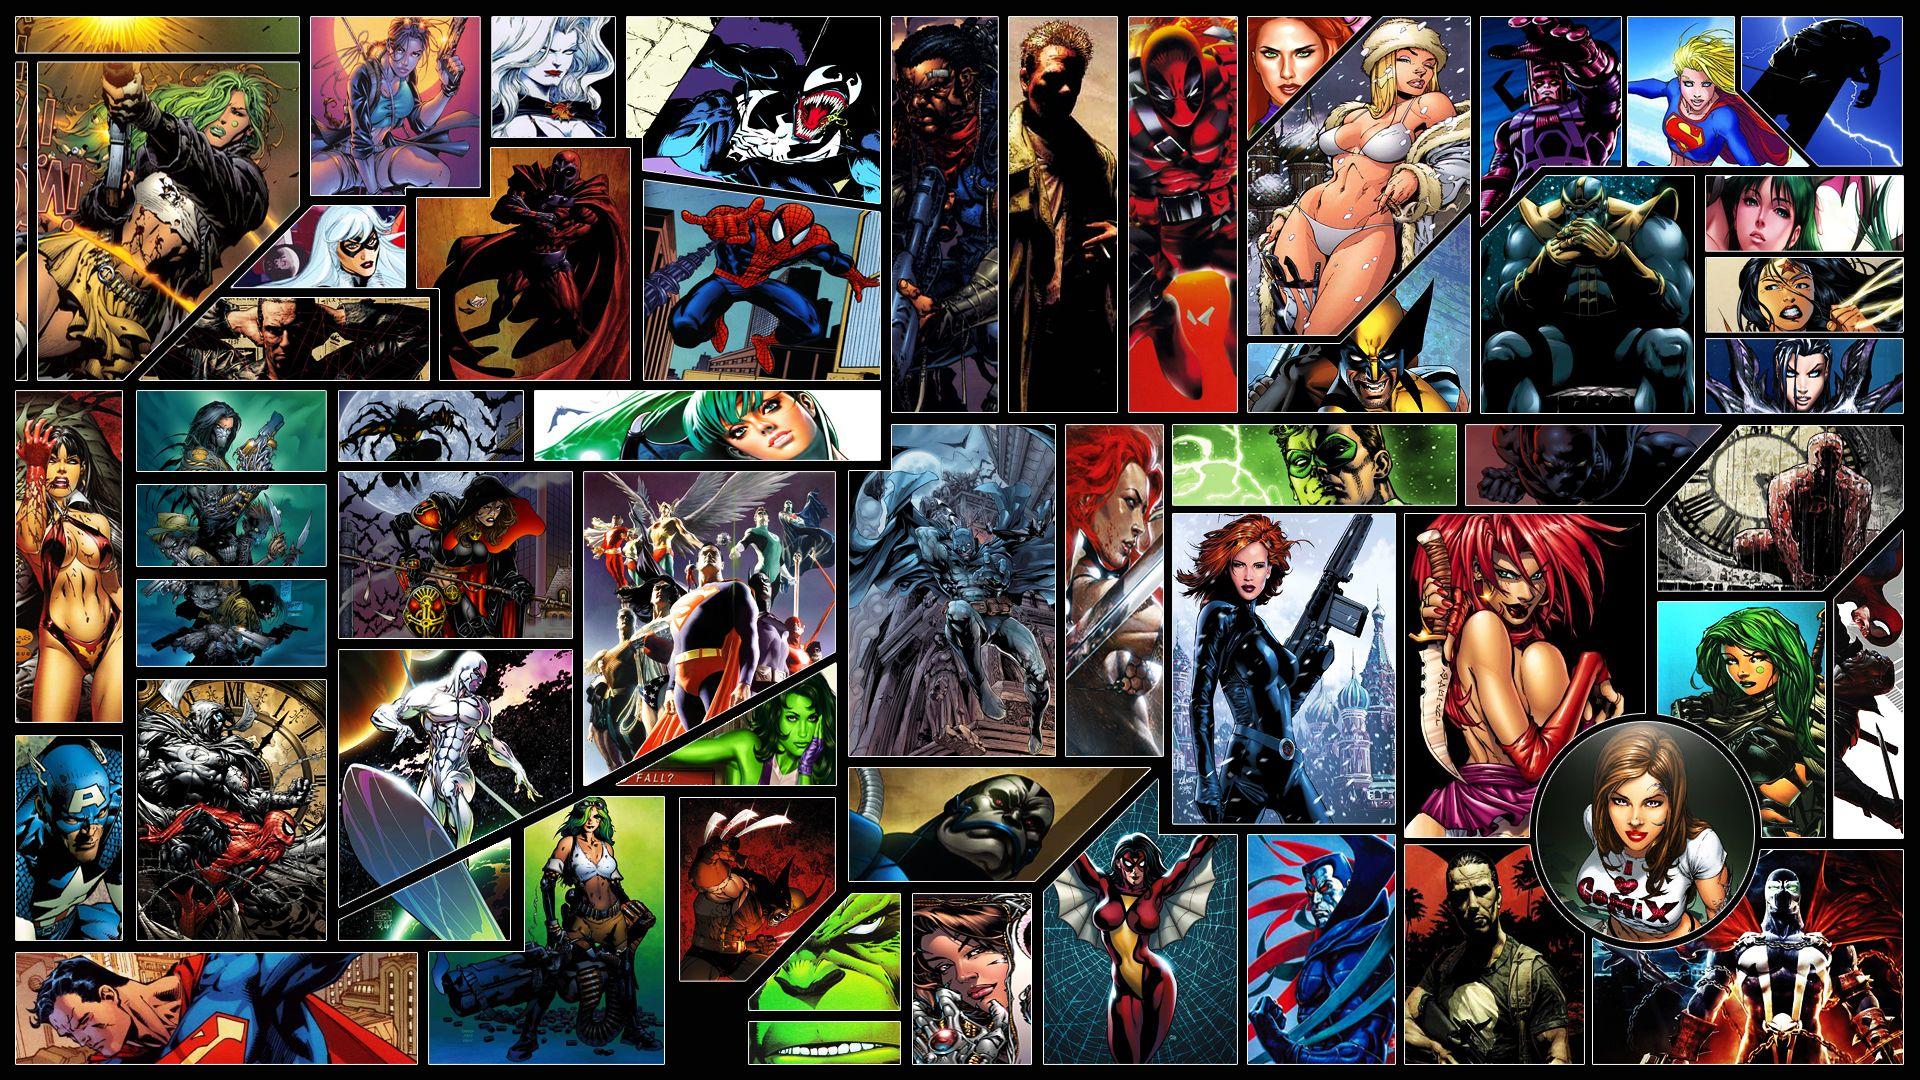 dc comics. DC comics Marvel. Full HD Desktop Wallpaper 1080p. Comic book wallpaper, Marvel wallpaper, Marvel comics wallpaper